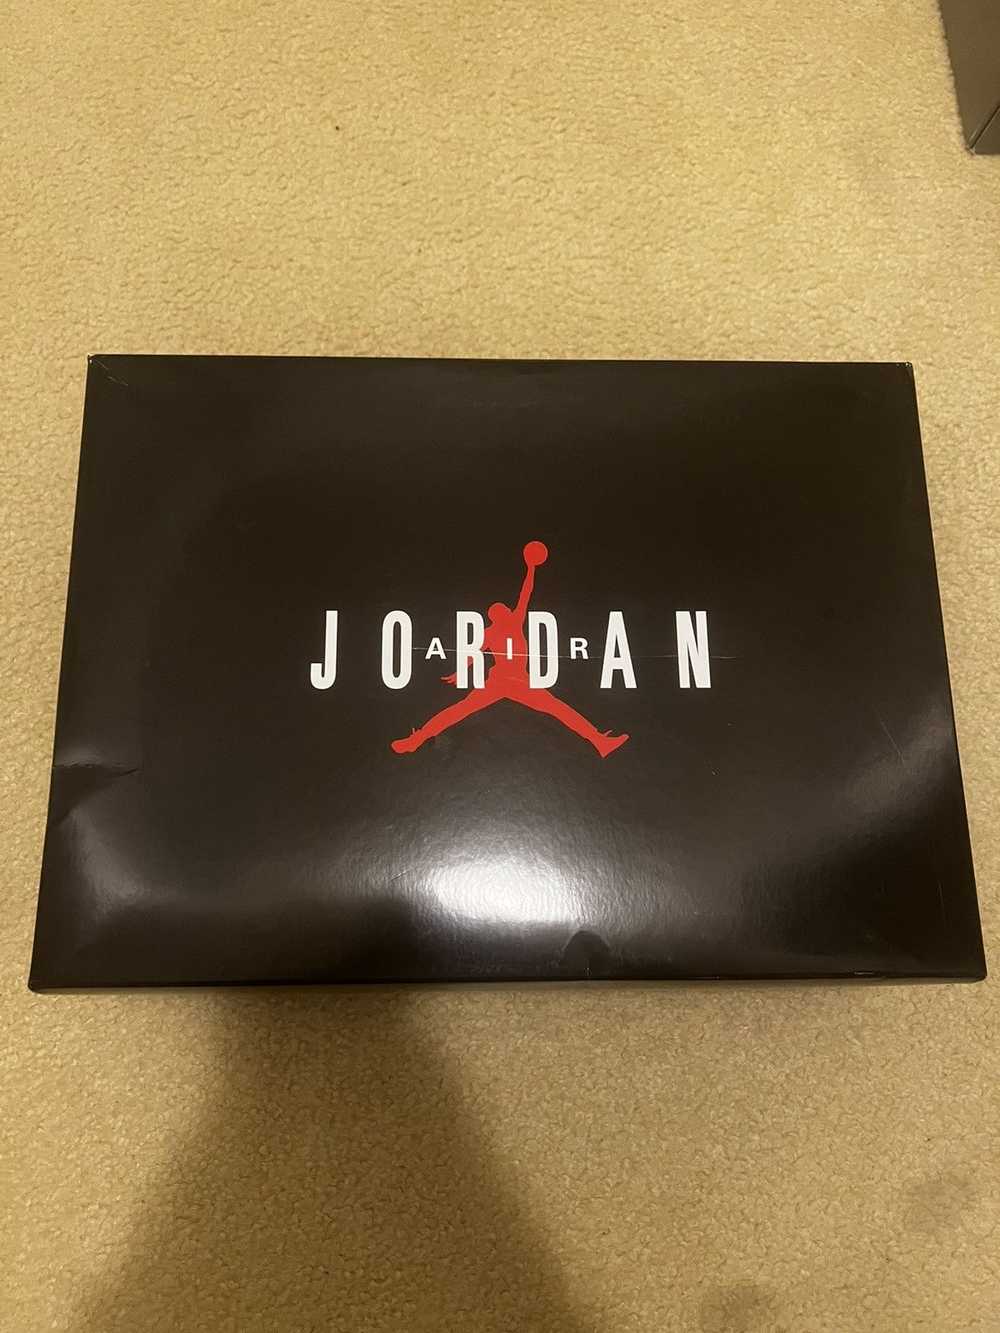 Jordan Brand Air Jordan 11 Retro 'Cherry' - image 1